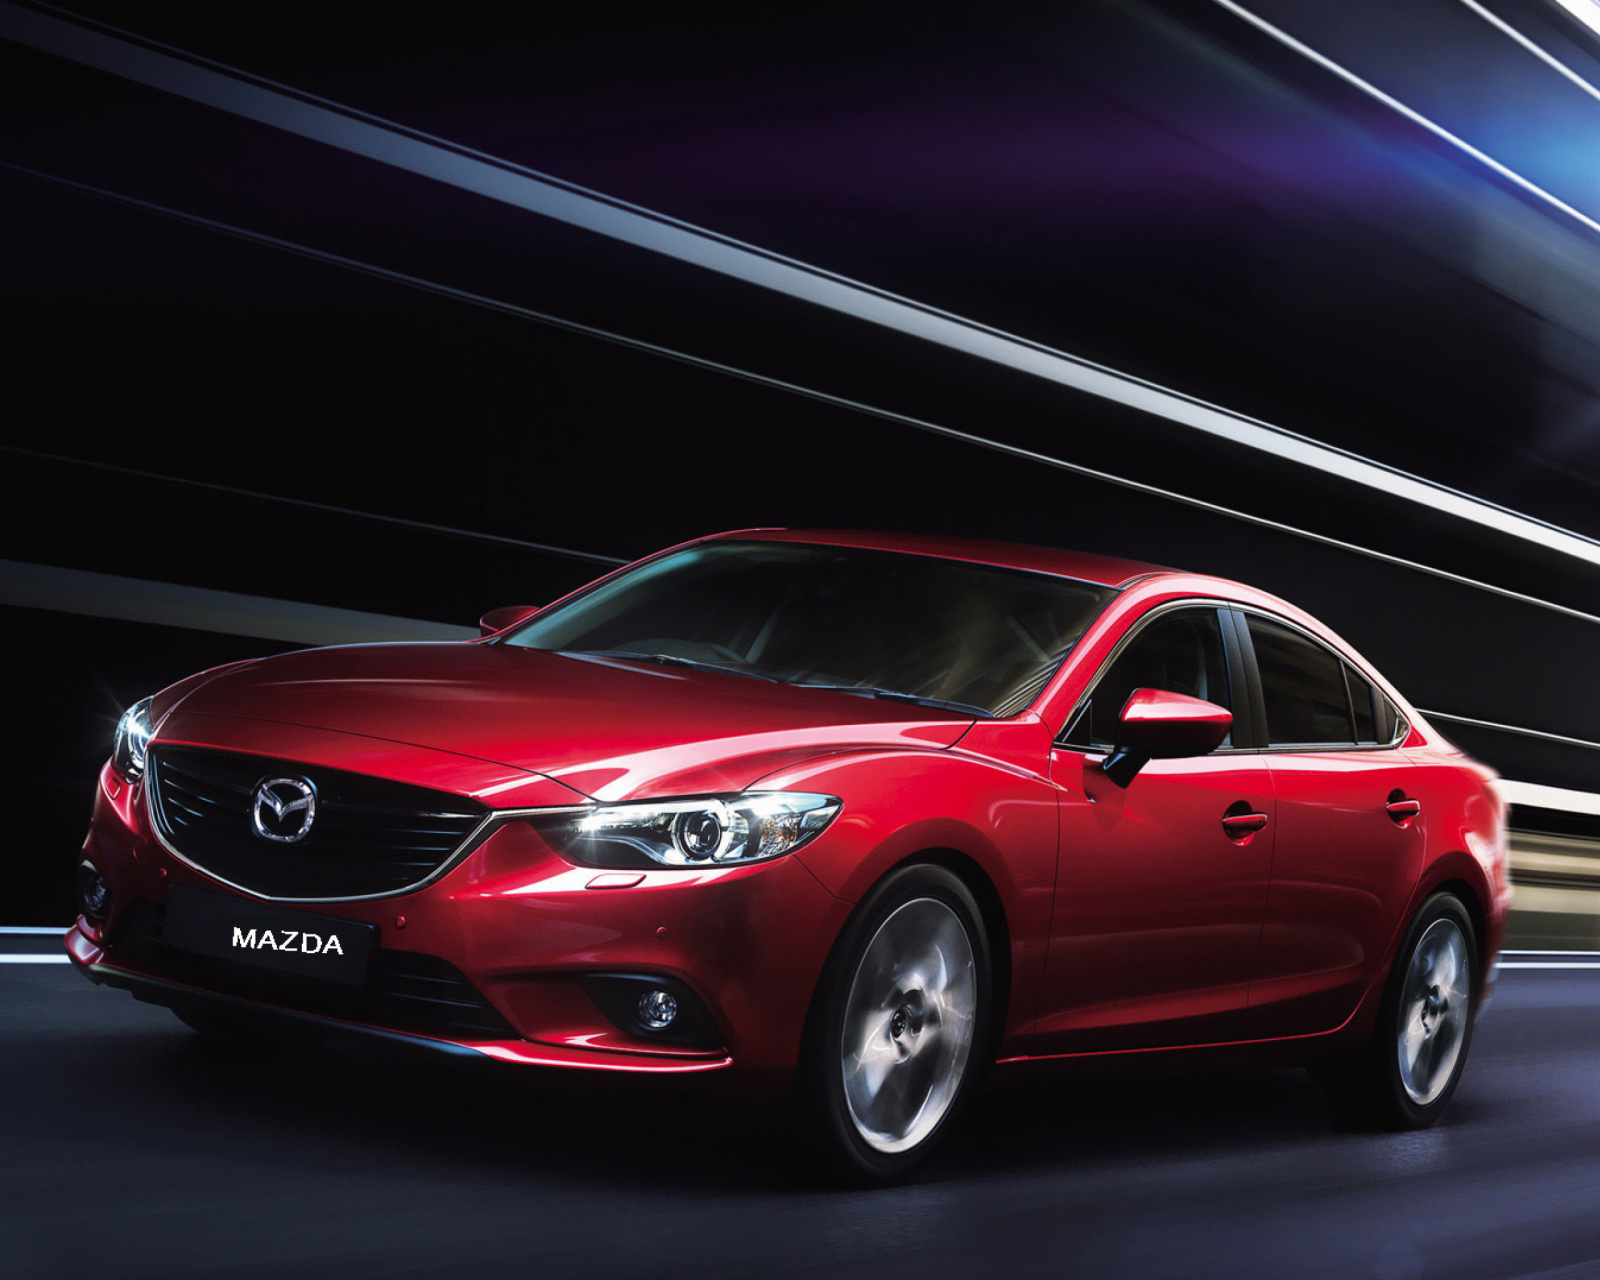 Fondo de pantalla Mazda 6 2014 1600x1280